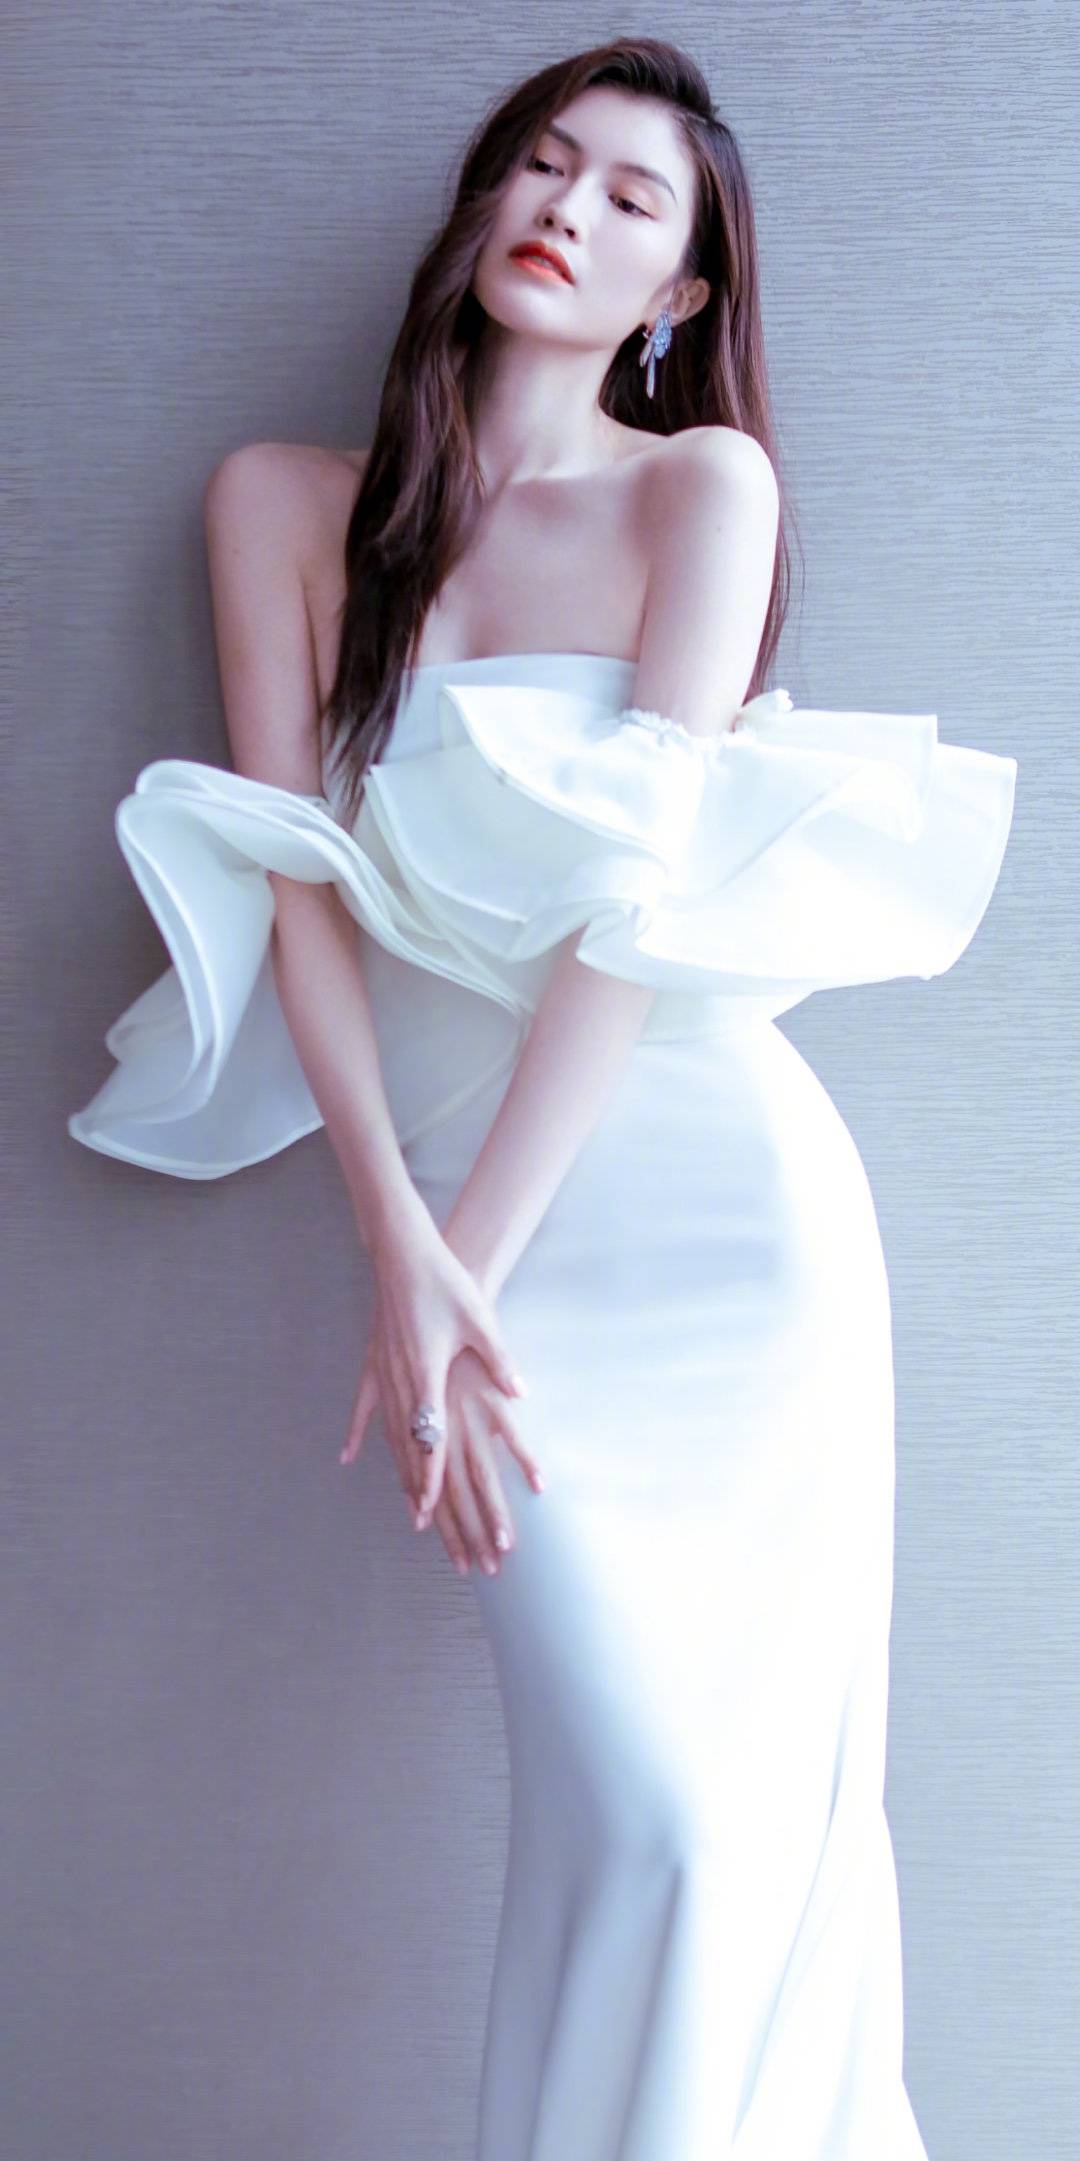 30岁何穗成熟优雅一身纯白抹胸礼裙前凸后翘很迷人